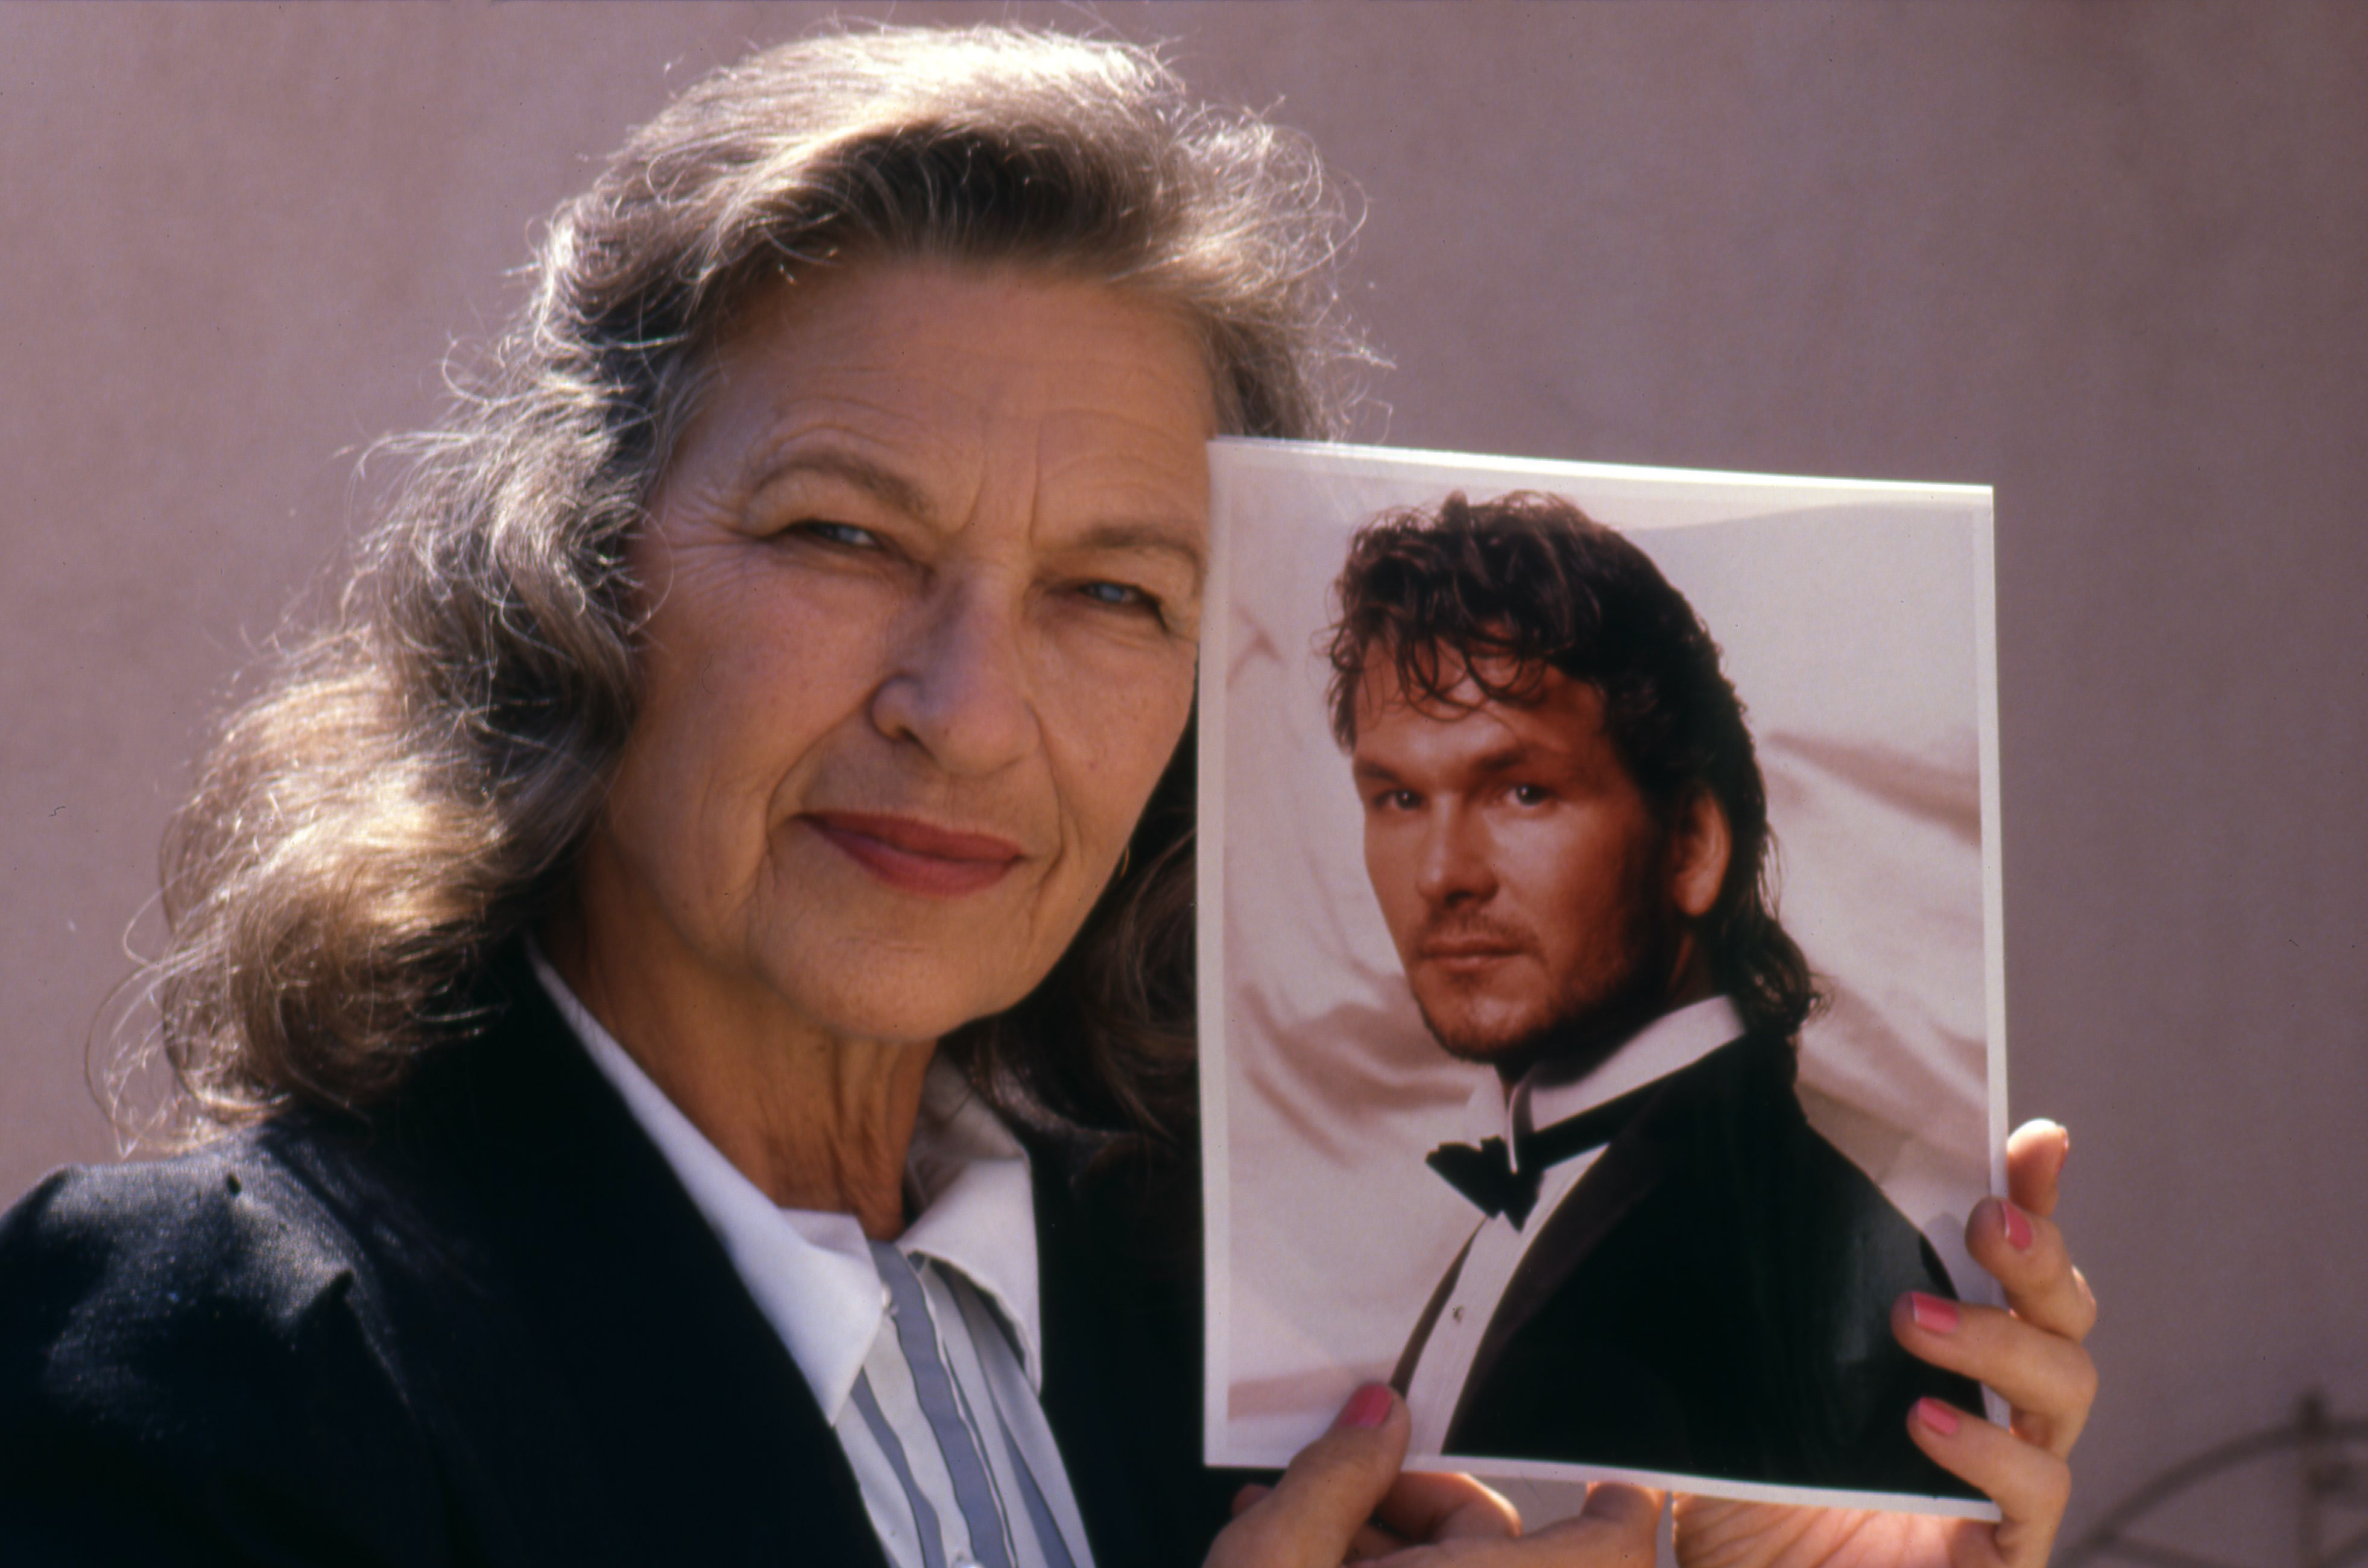 Patsy Swayze pose pour un portrait en tenant une photo de son fils, Patrick Swayze, vers 1988 | Source : Getty Images